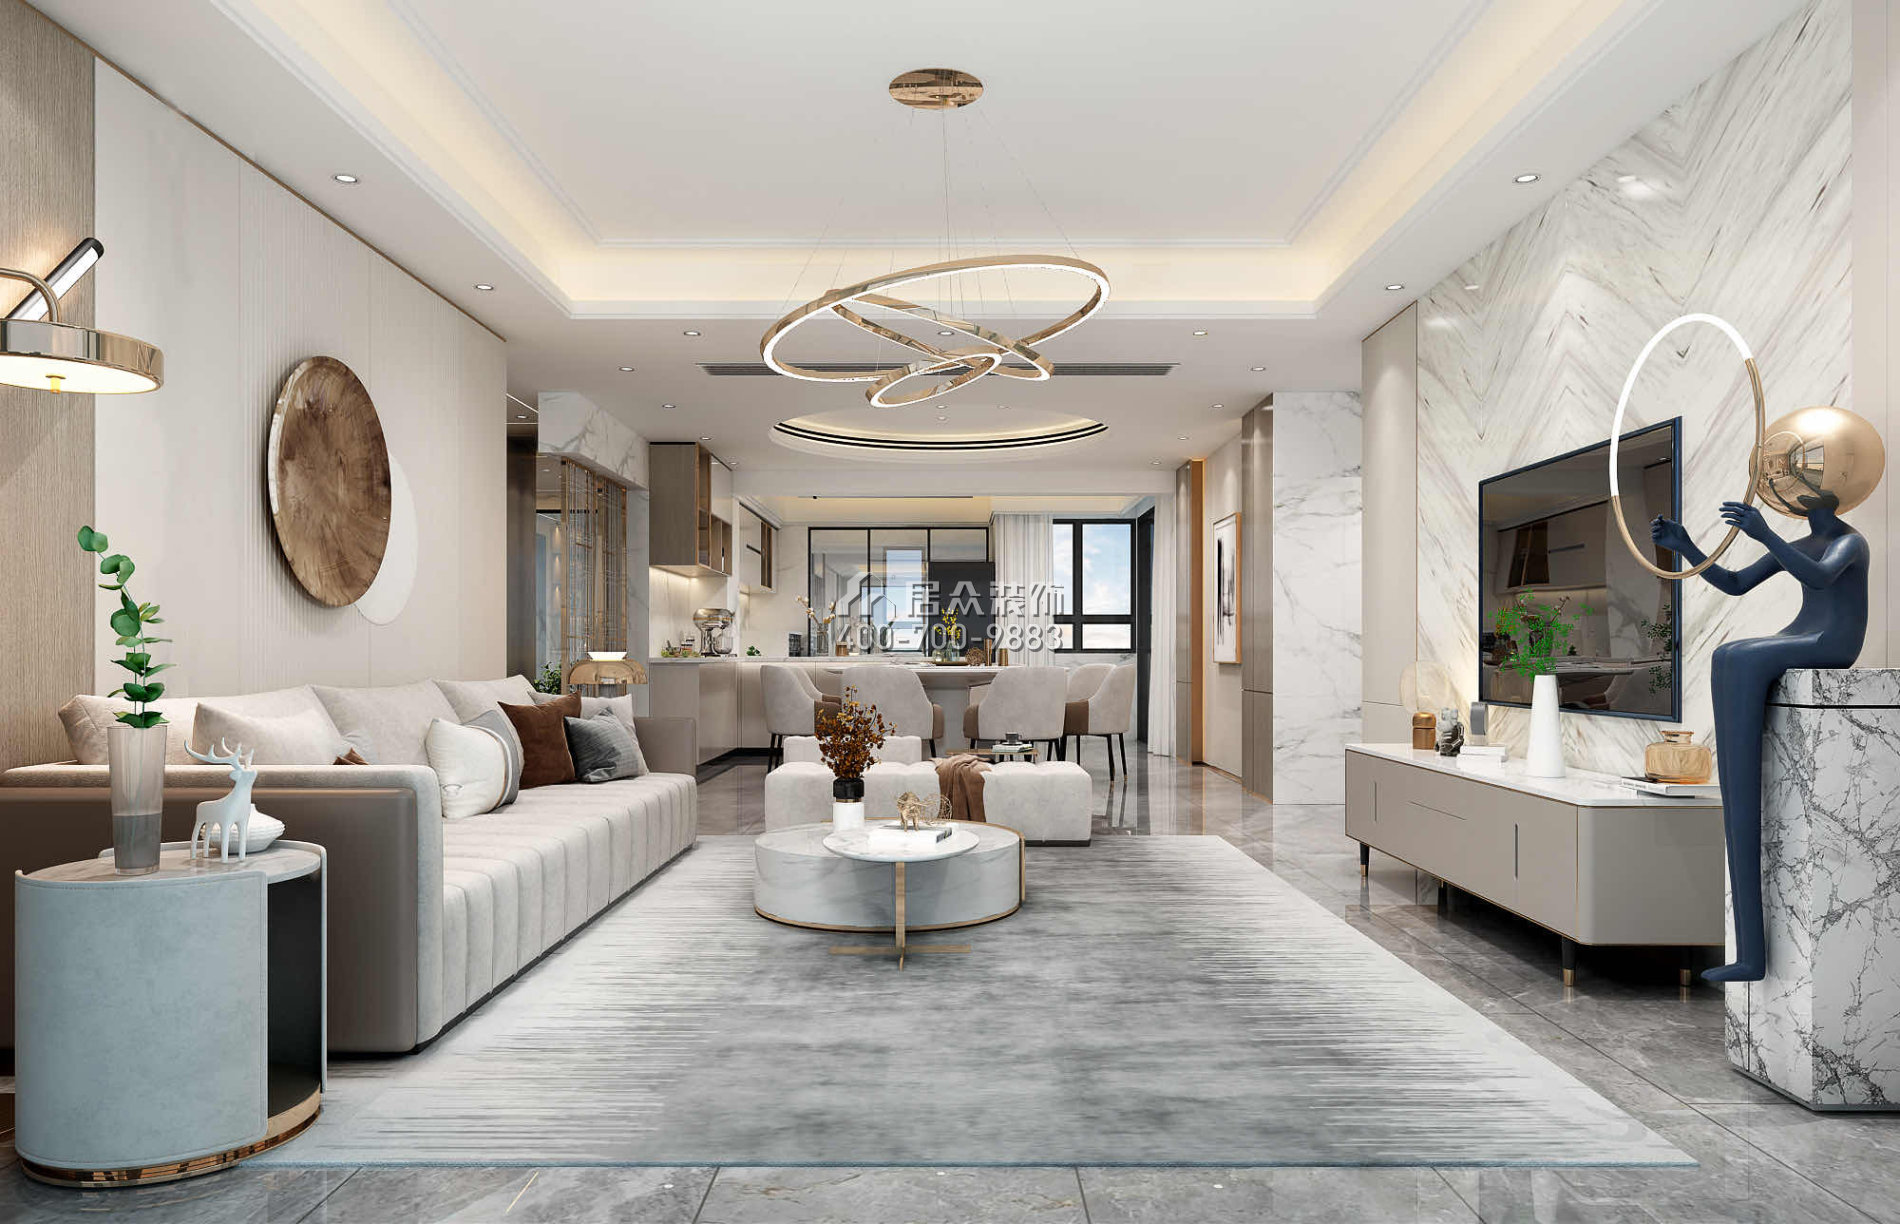 世纪新城230平方米现代简约风格平层户型客厅装修效果图